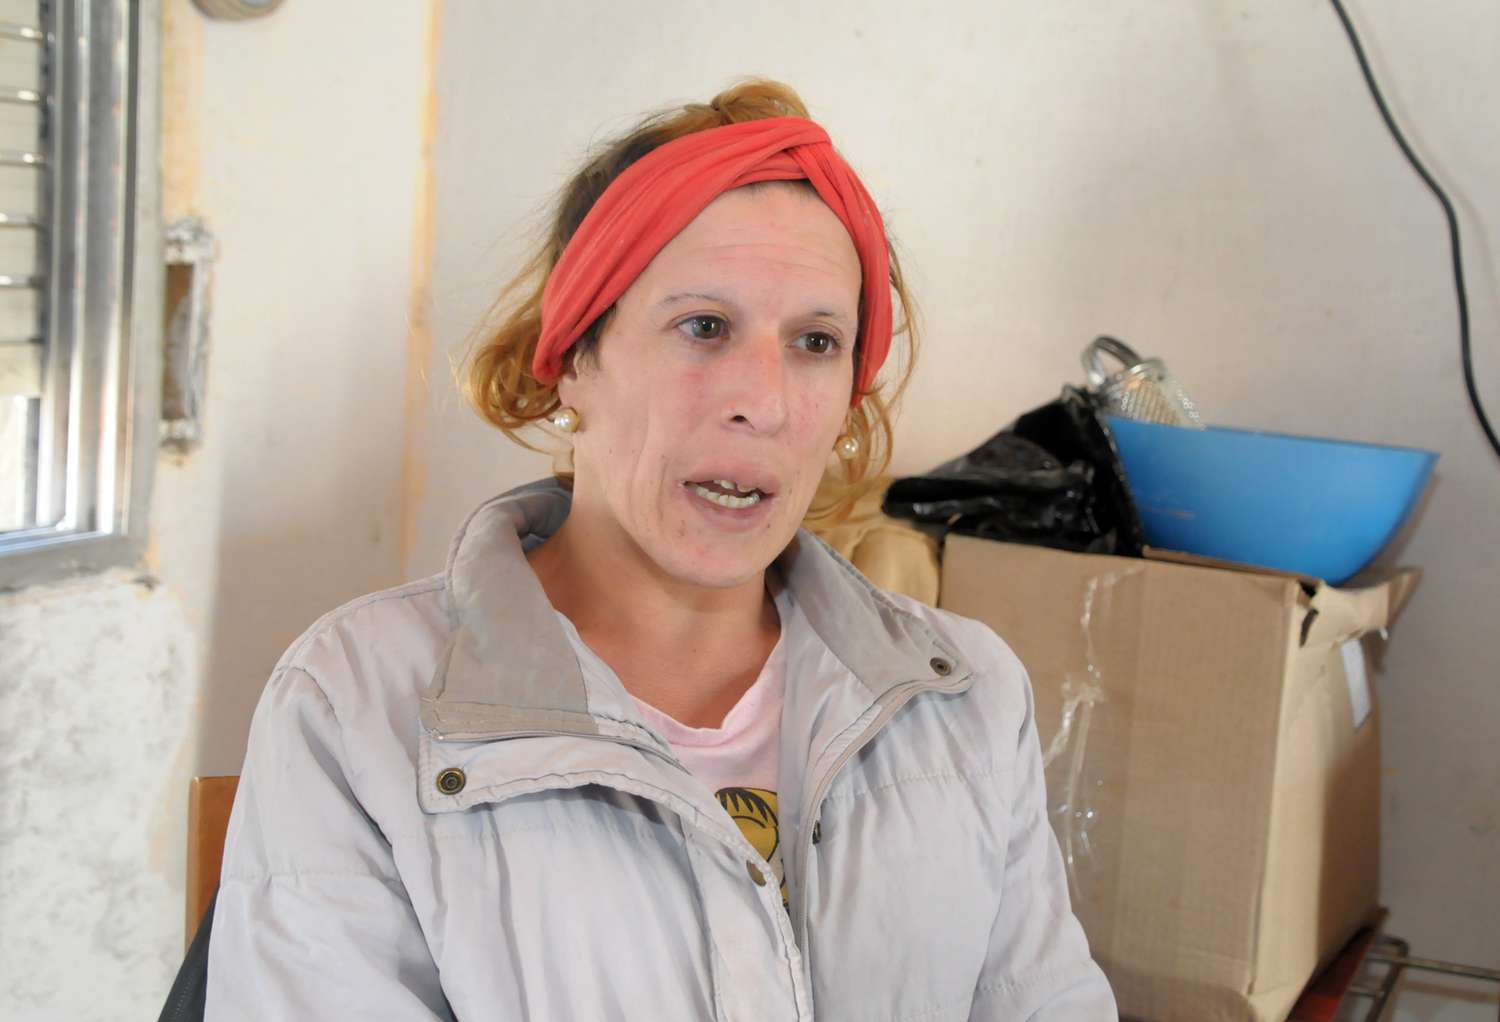 Una mujer con HIV que vive en un departamento sin agua pide ayuda para conseguir alquiler